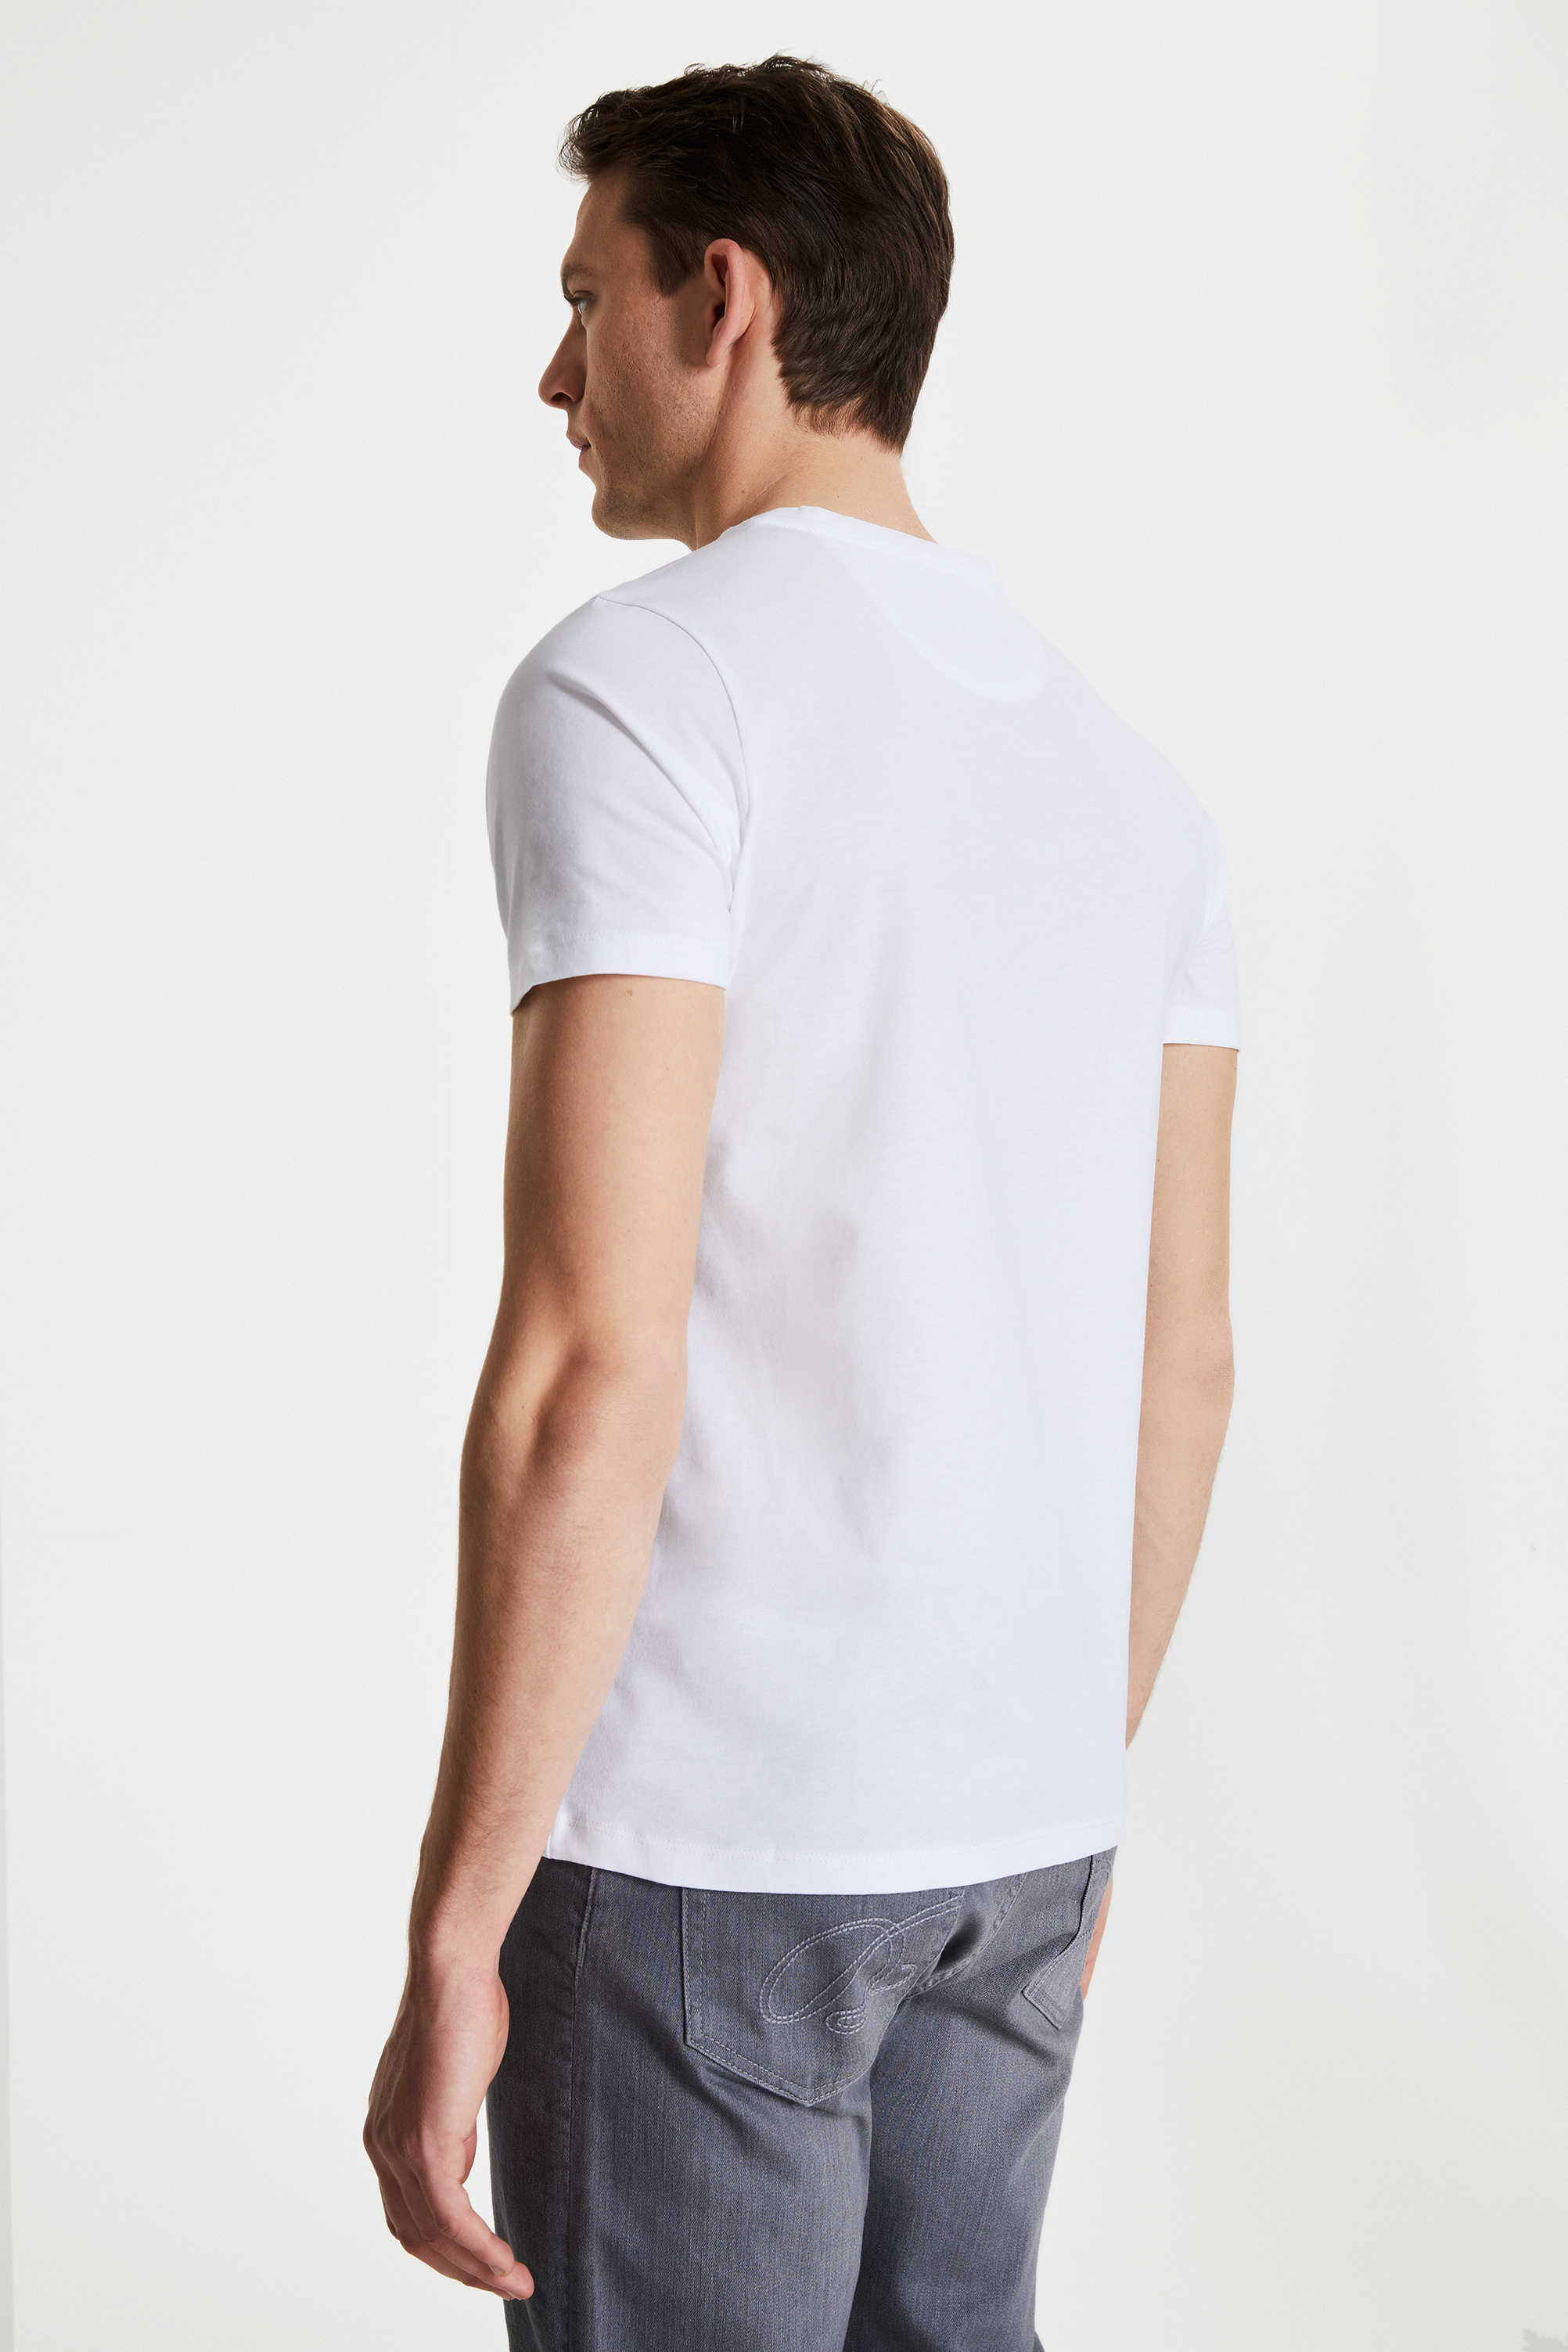 Damat Tween Damat Beyaz Çizgili Baskılı T-shirt. 4